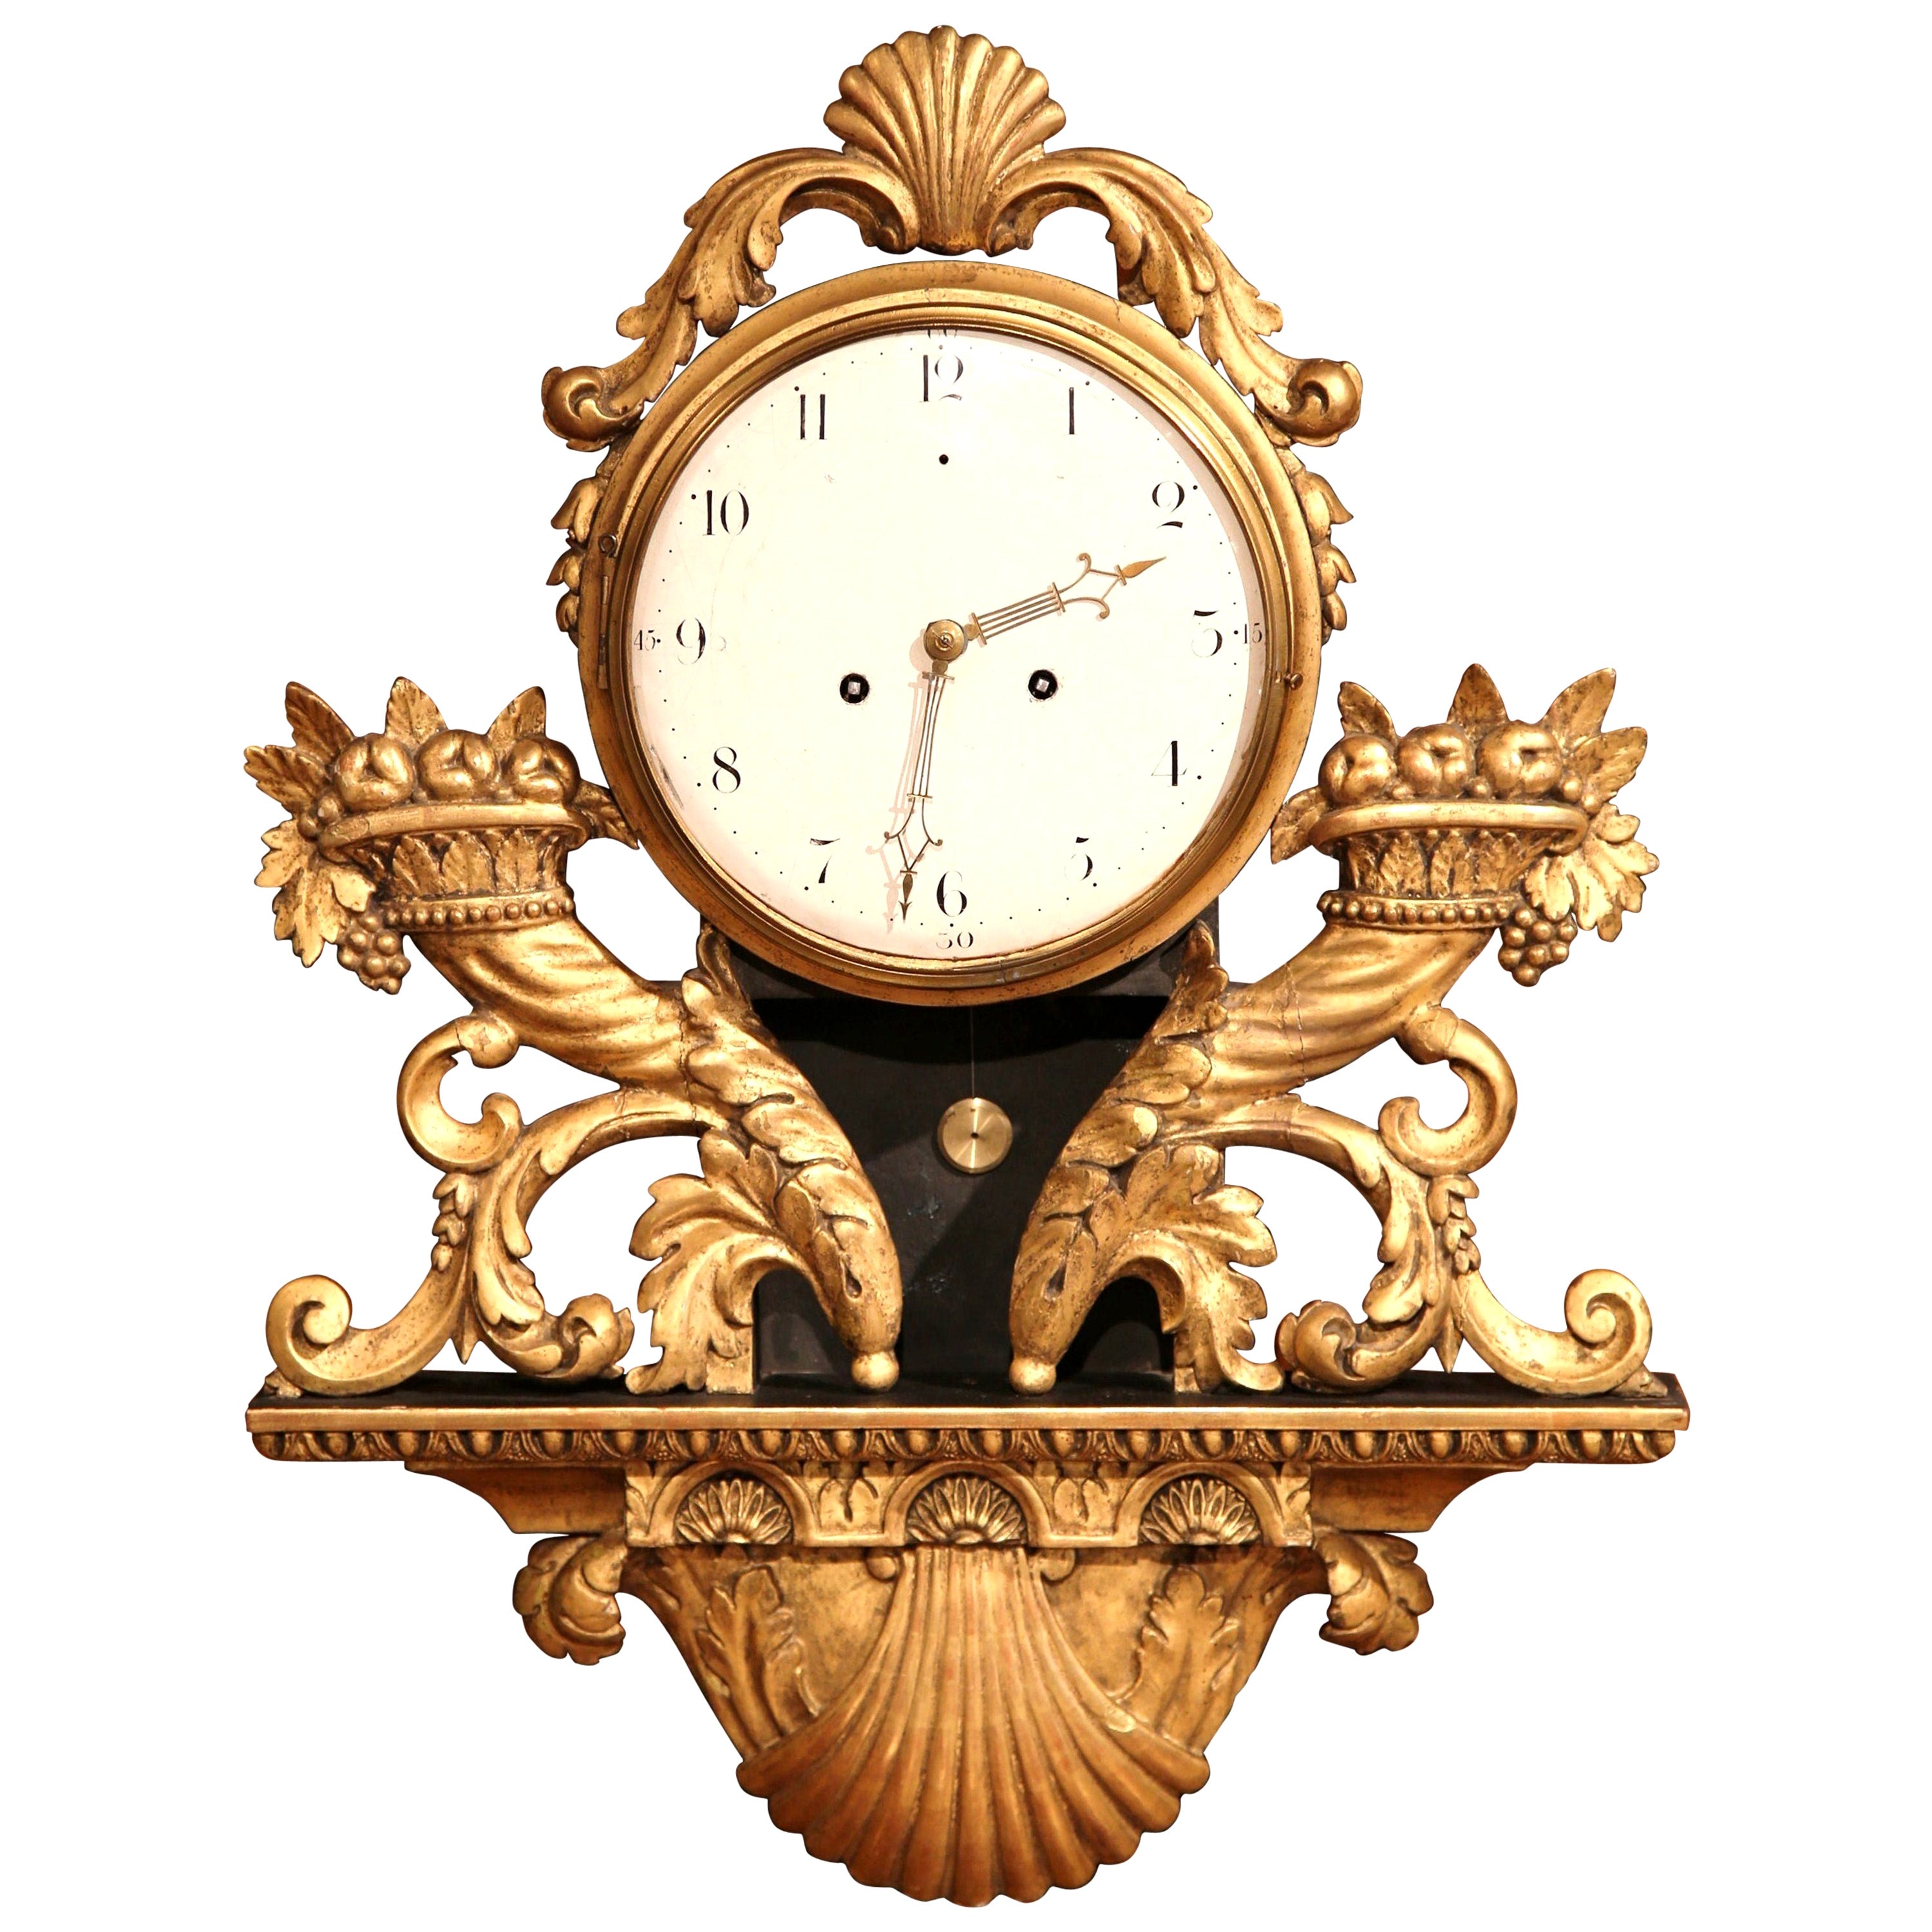 Часы 018. Часы настенные 18 век. Часы настольные 18 век. Часы 18 века. Часы Франция 18 век.